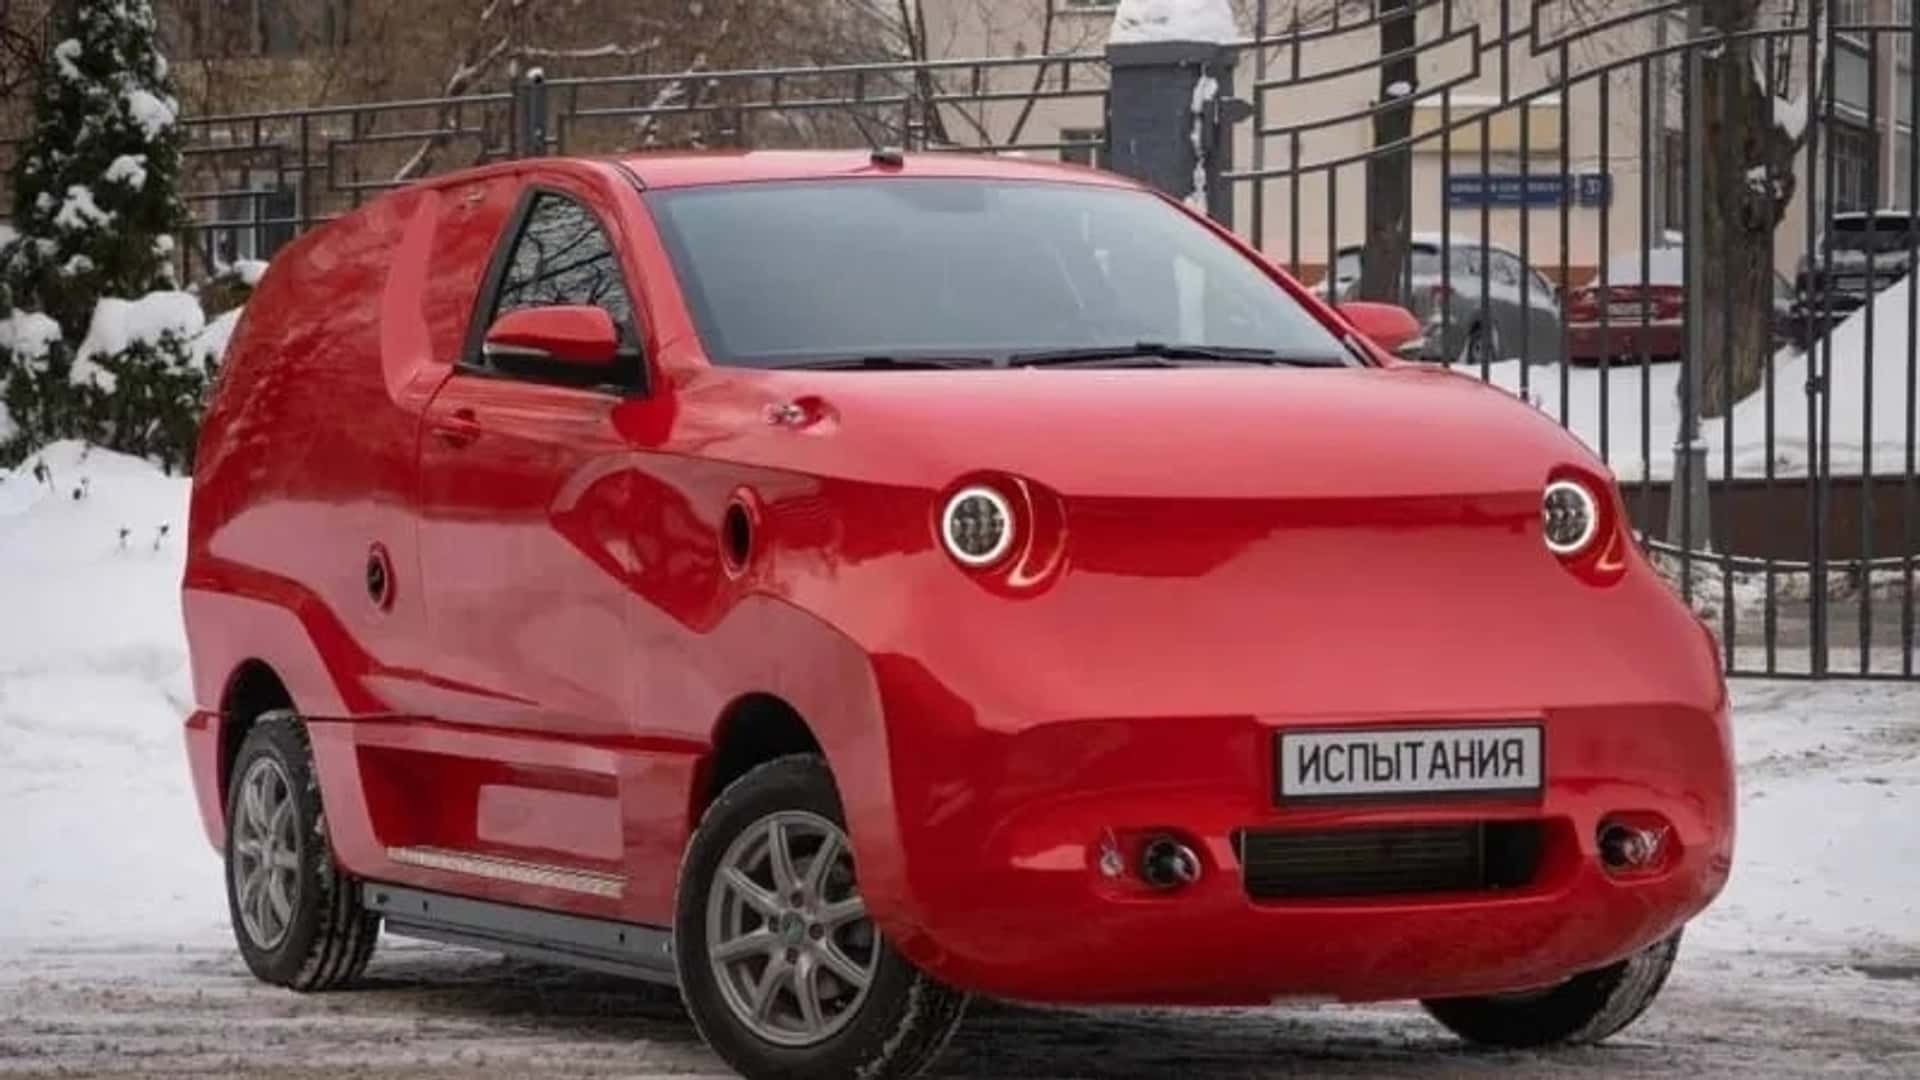 روسيا تقدم سيارة كهربائية جديدة كلياً بتصميم غريب وسيتم تصنيعها في مصنع بي ام دبليو السابق! 1